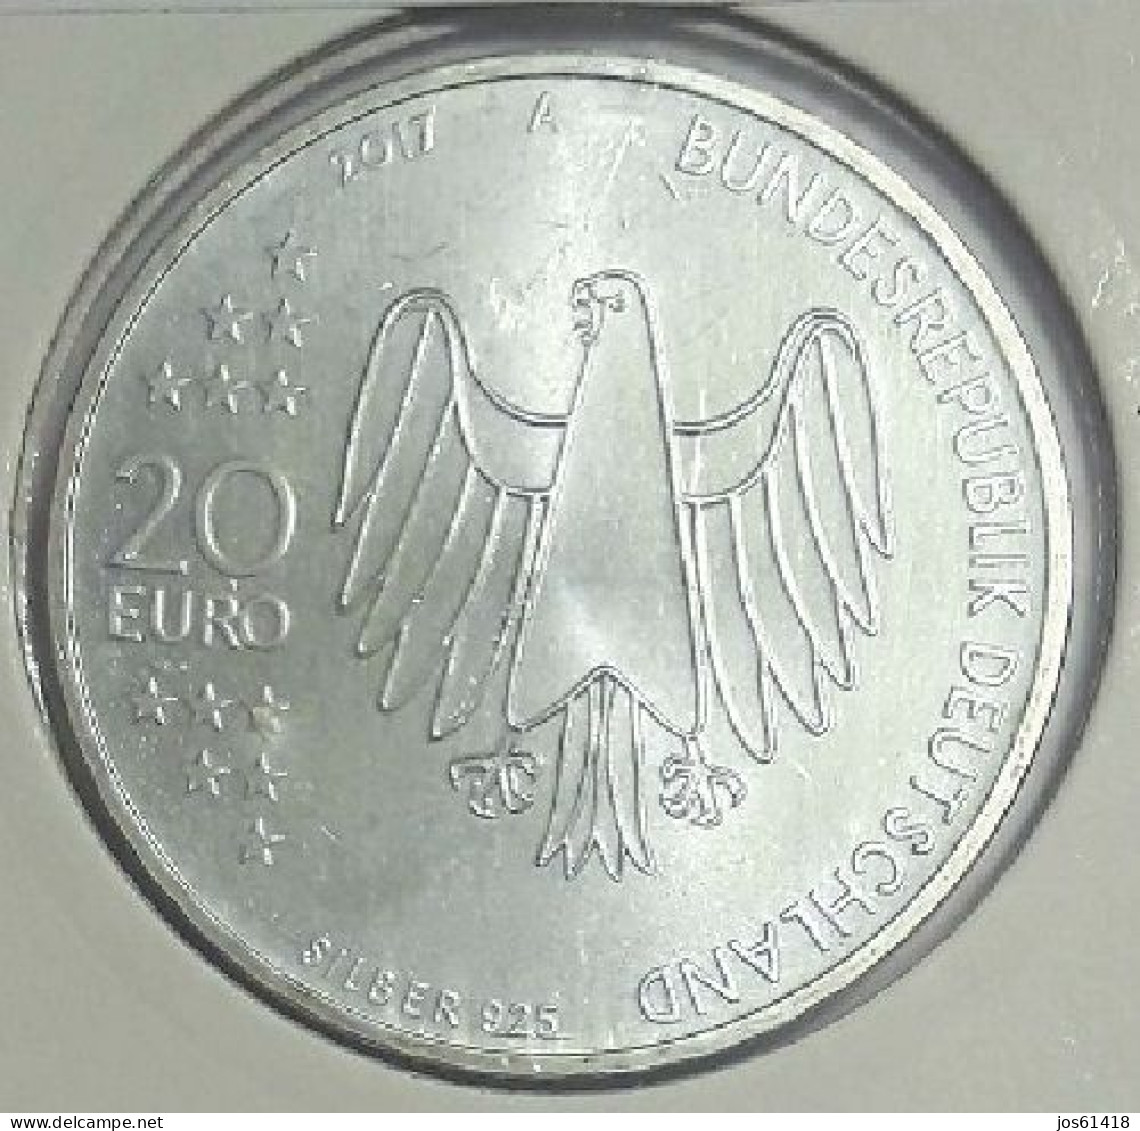 20 Euros Alemania / Germany   2017 500 Años De La Reforma   A  Plata - Germany